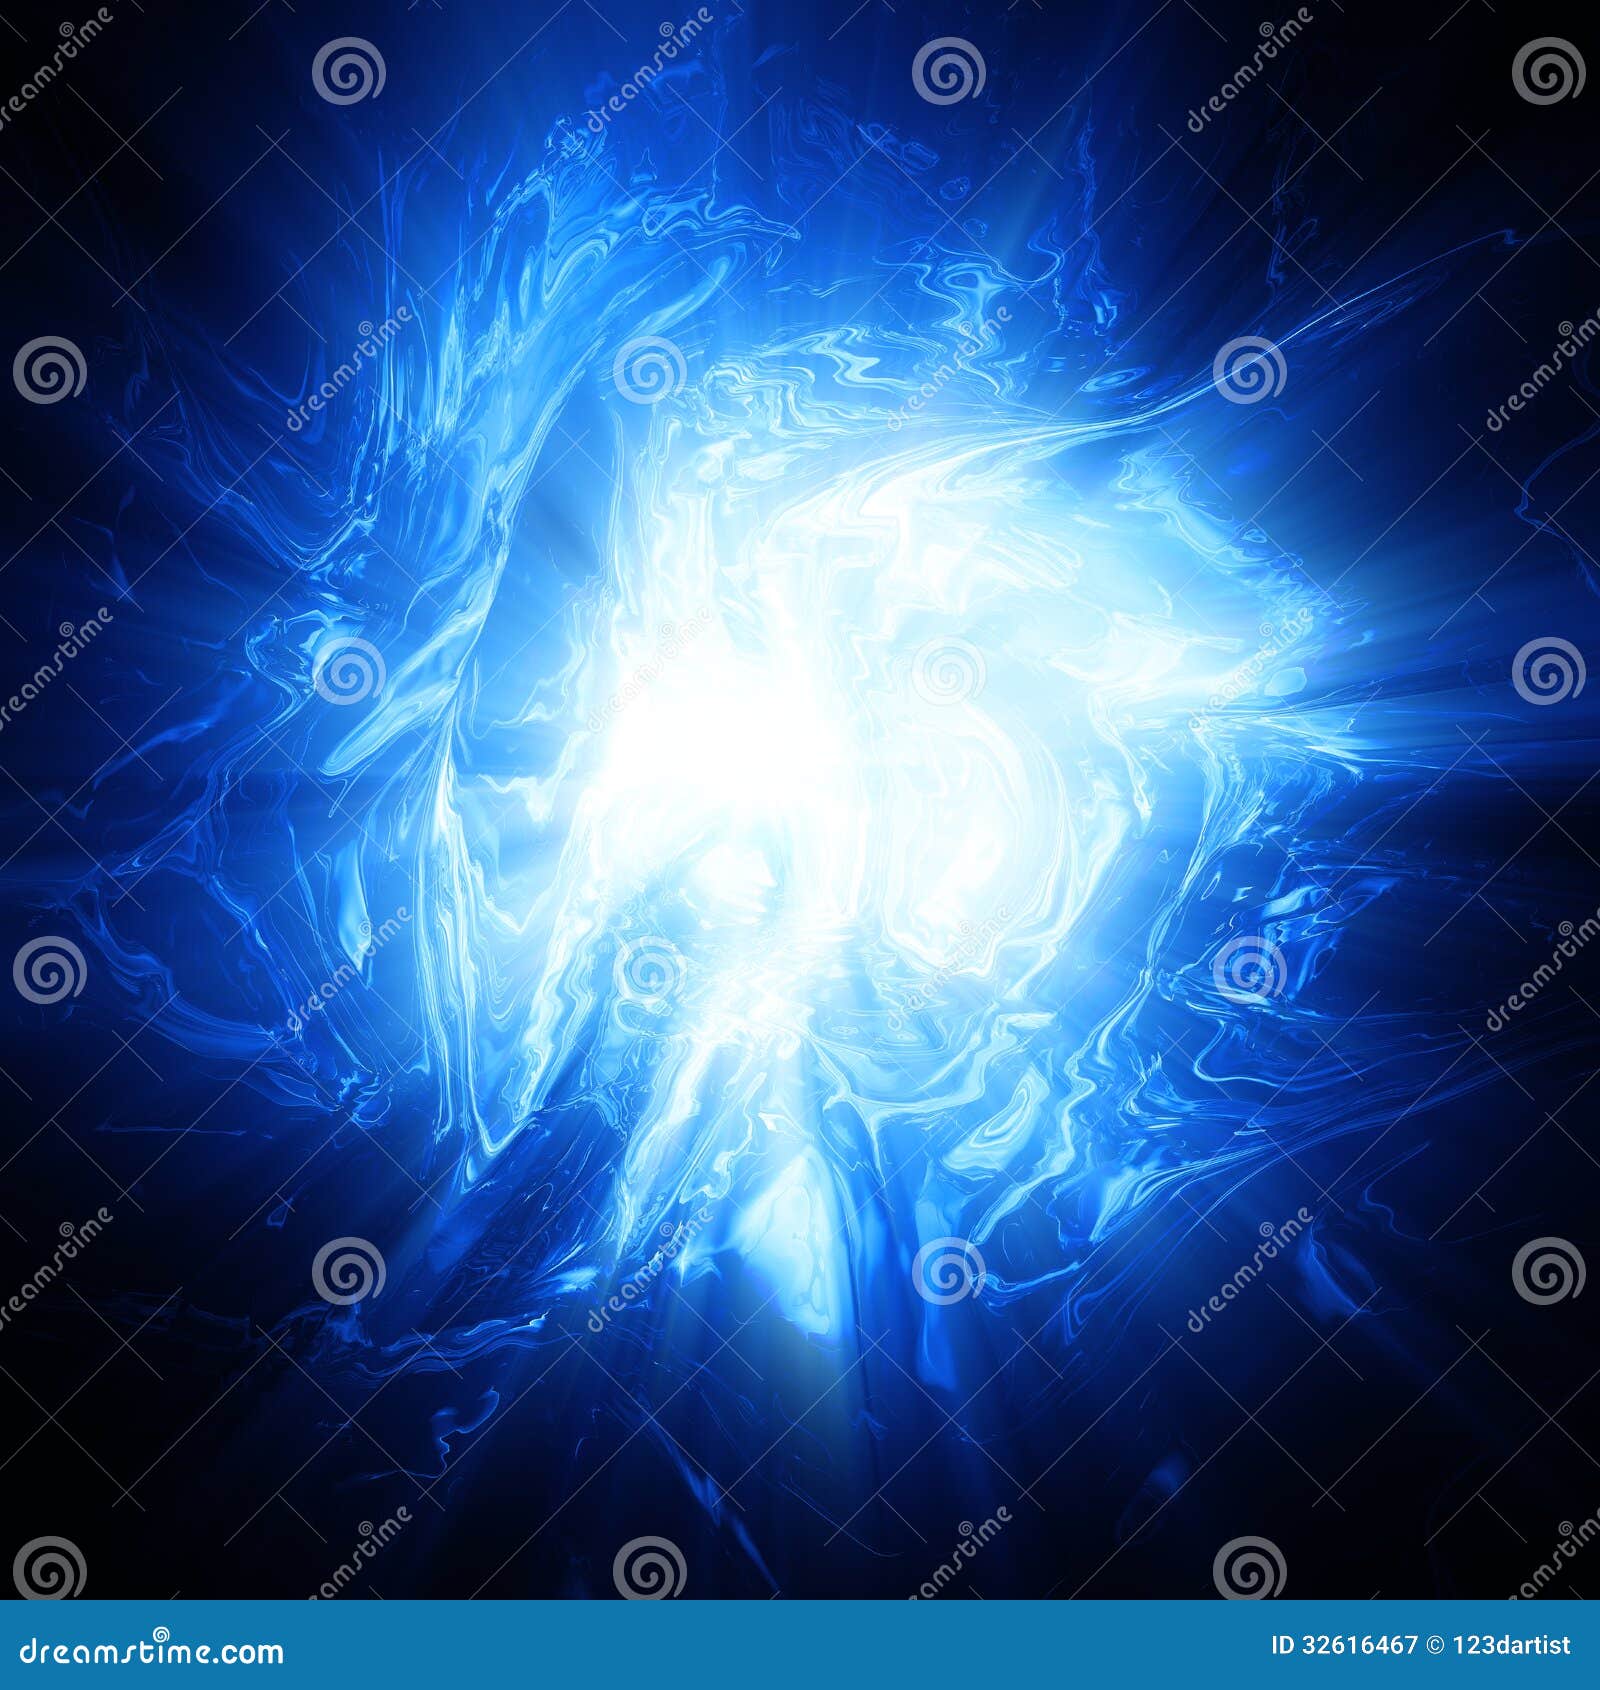 shining blue plasma